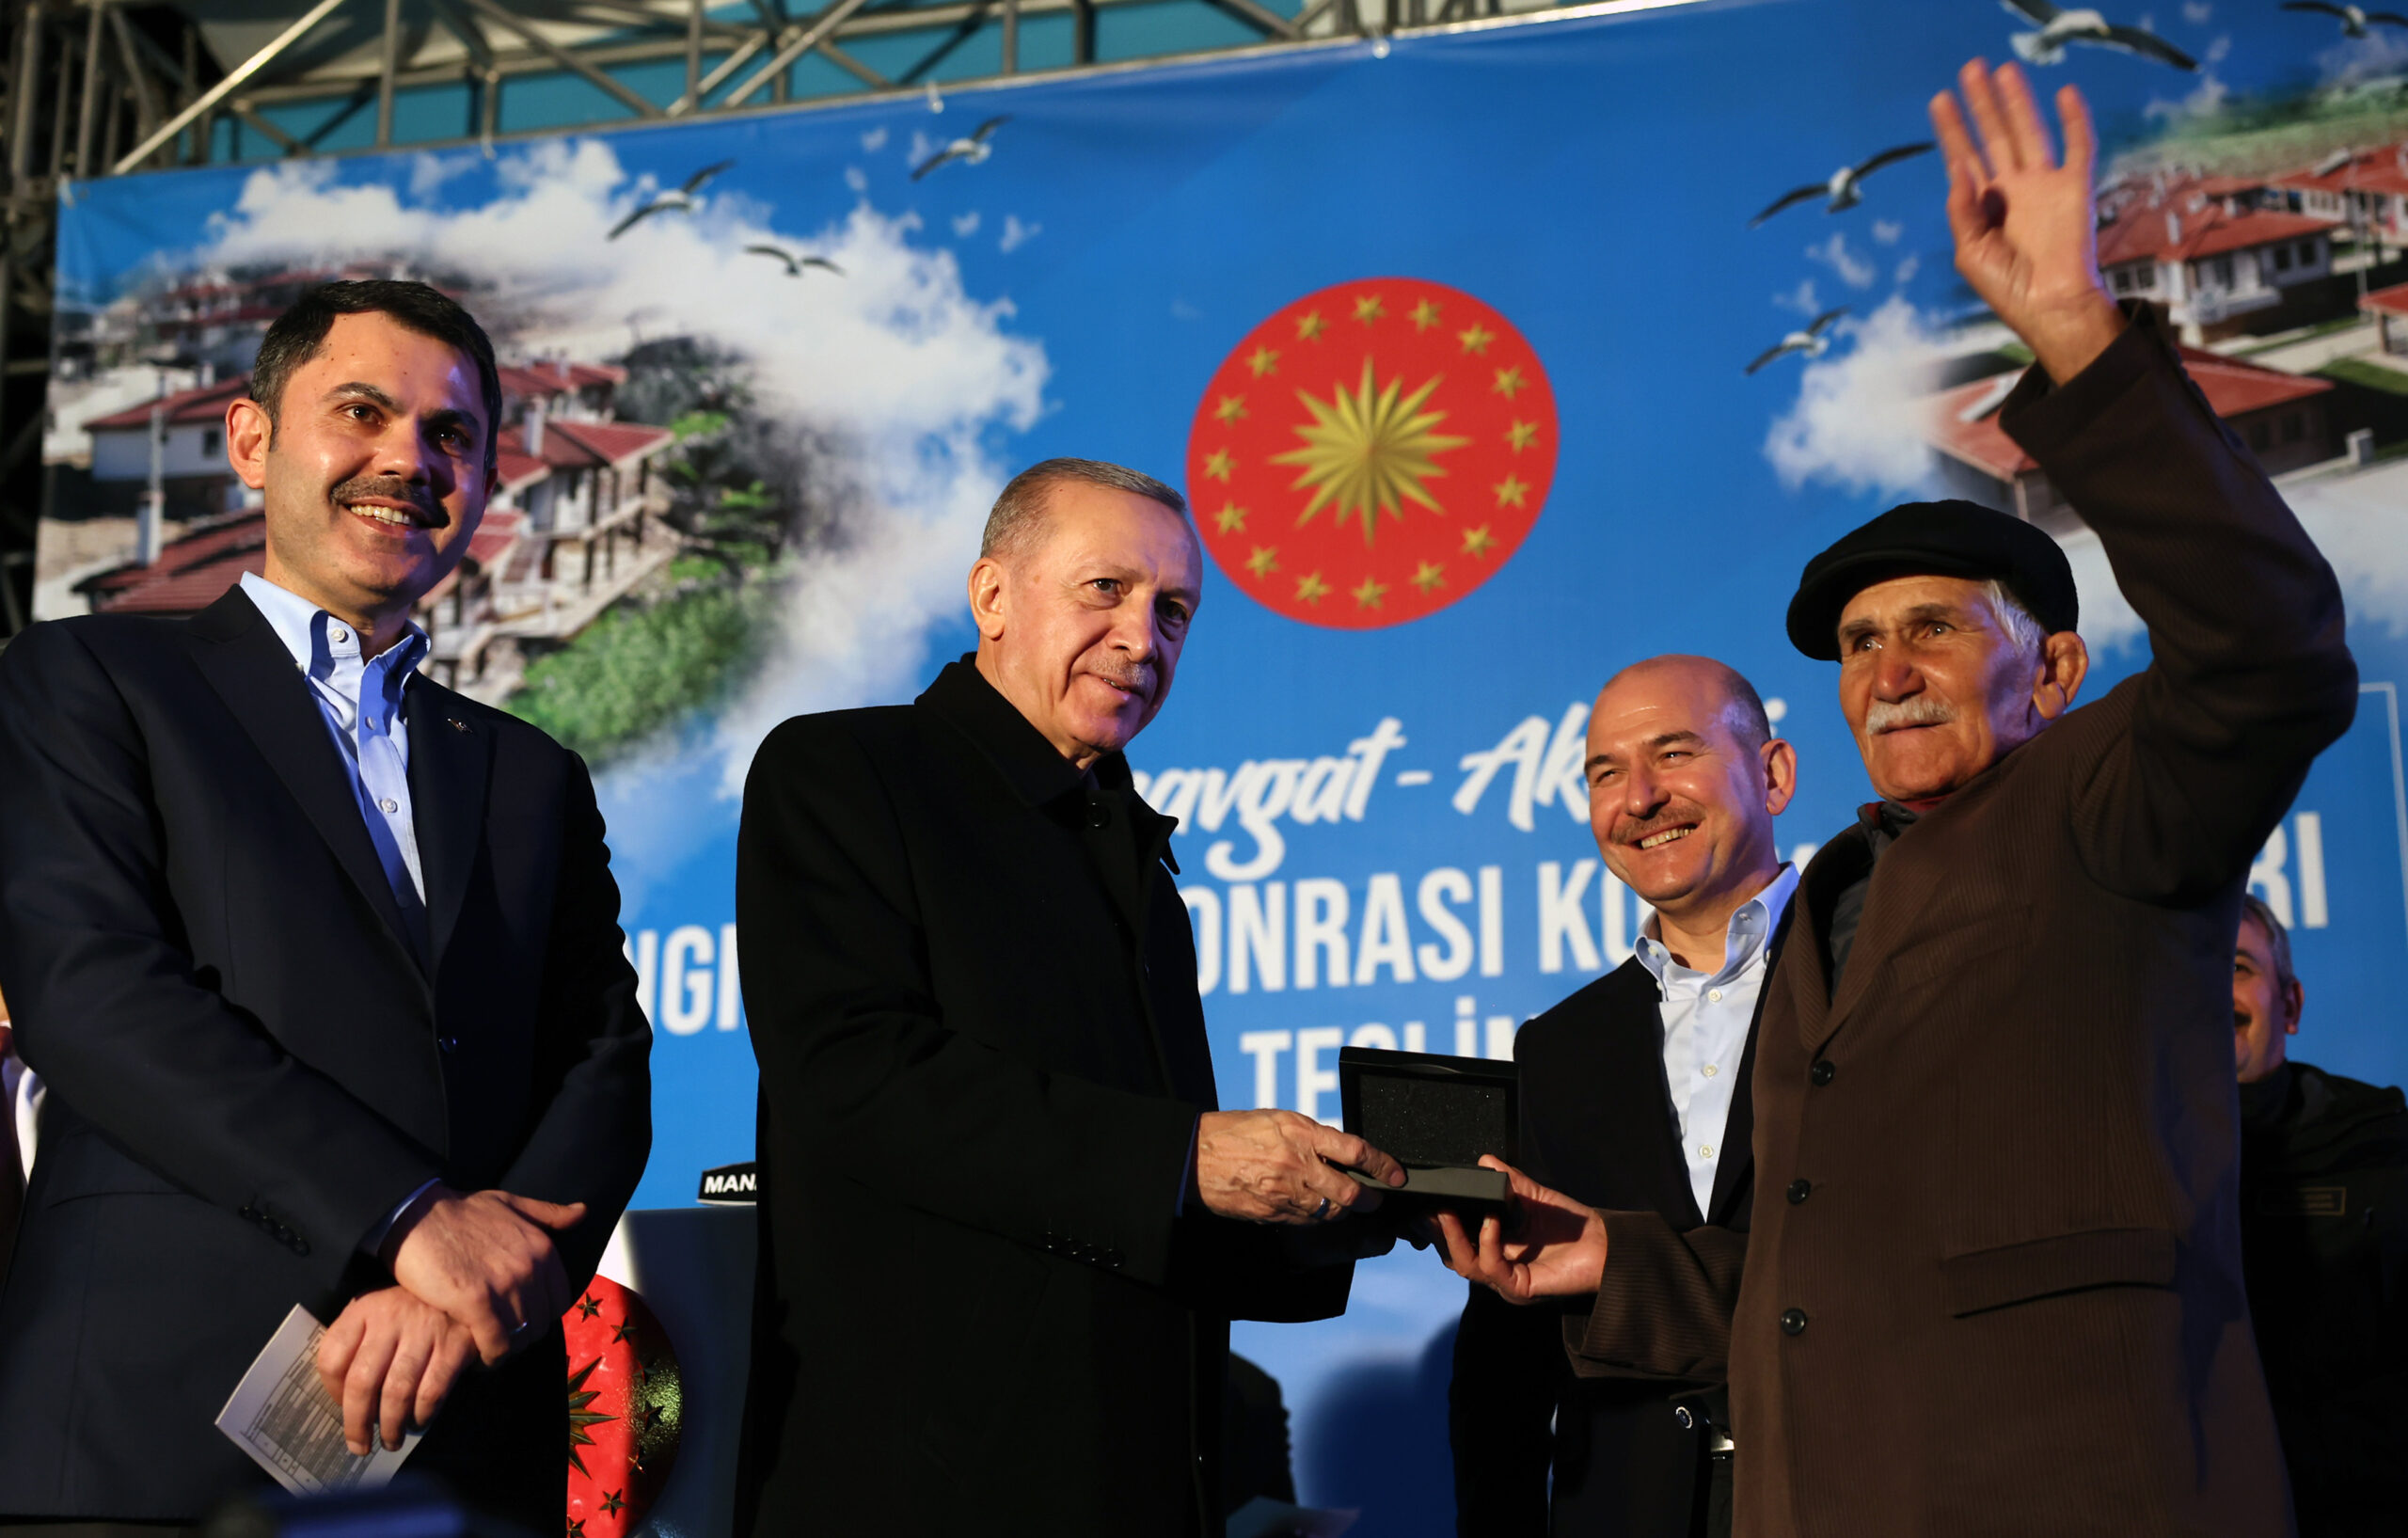 Erdoğan: Afet konutlarını yüzde 66 indirimle 2 yılı ödemesiz sahiplerine vereceğiz